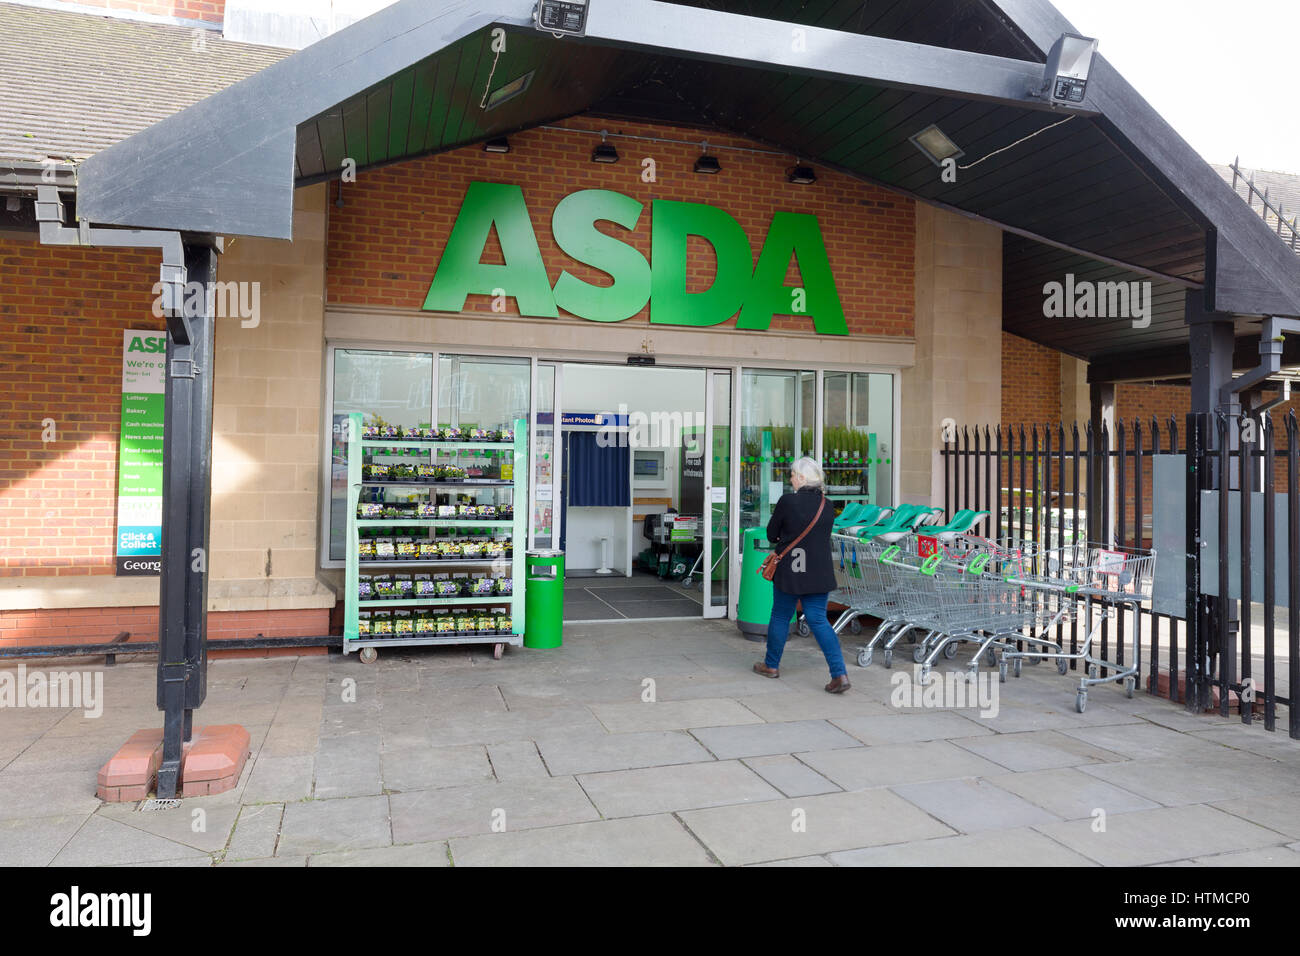 Entrée privée, supermarché Asda Worcestershire England UK Pershore Banque D'Images